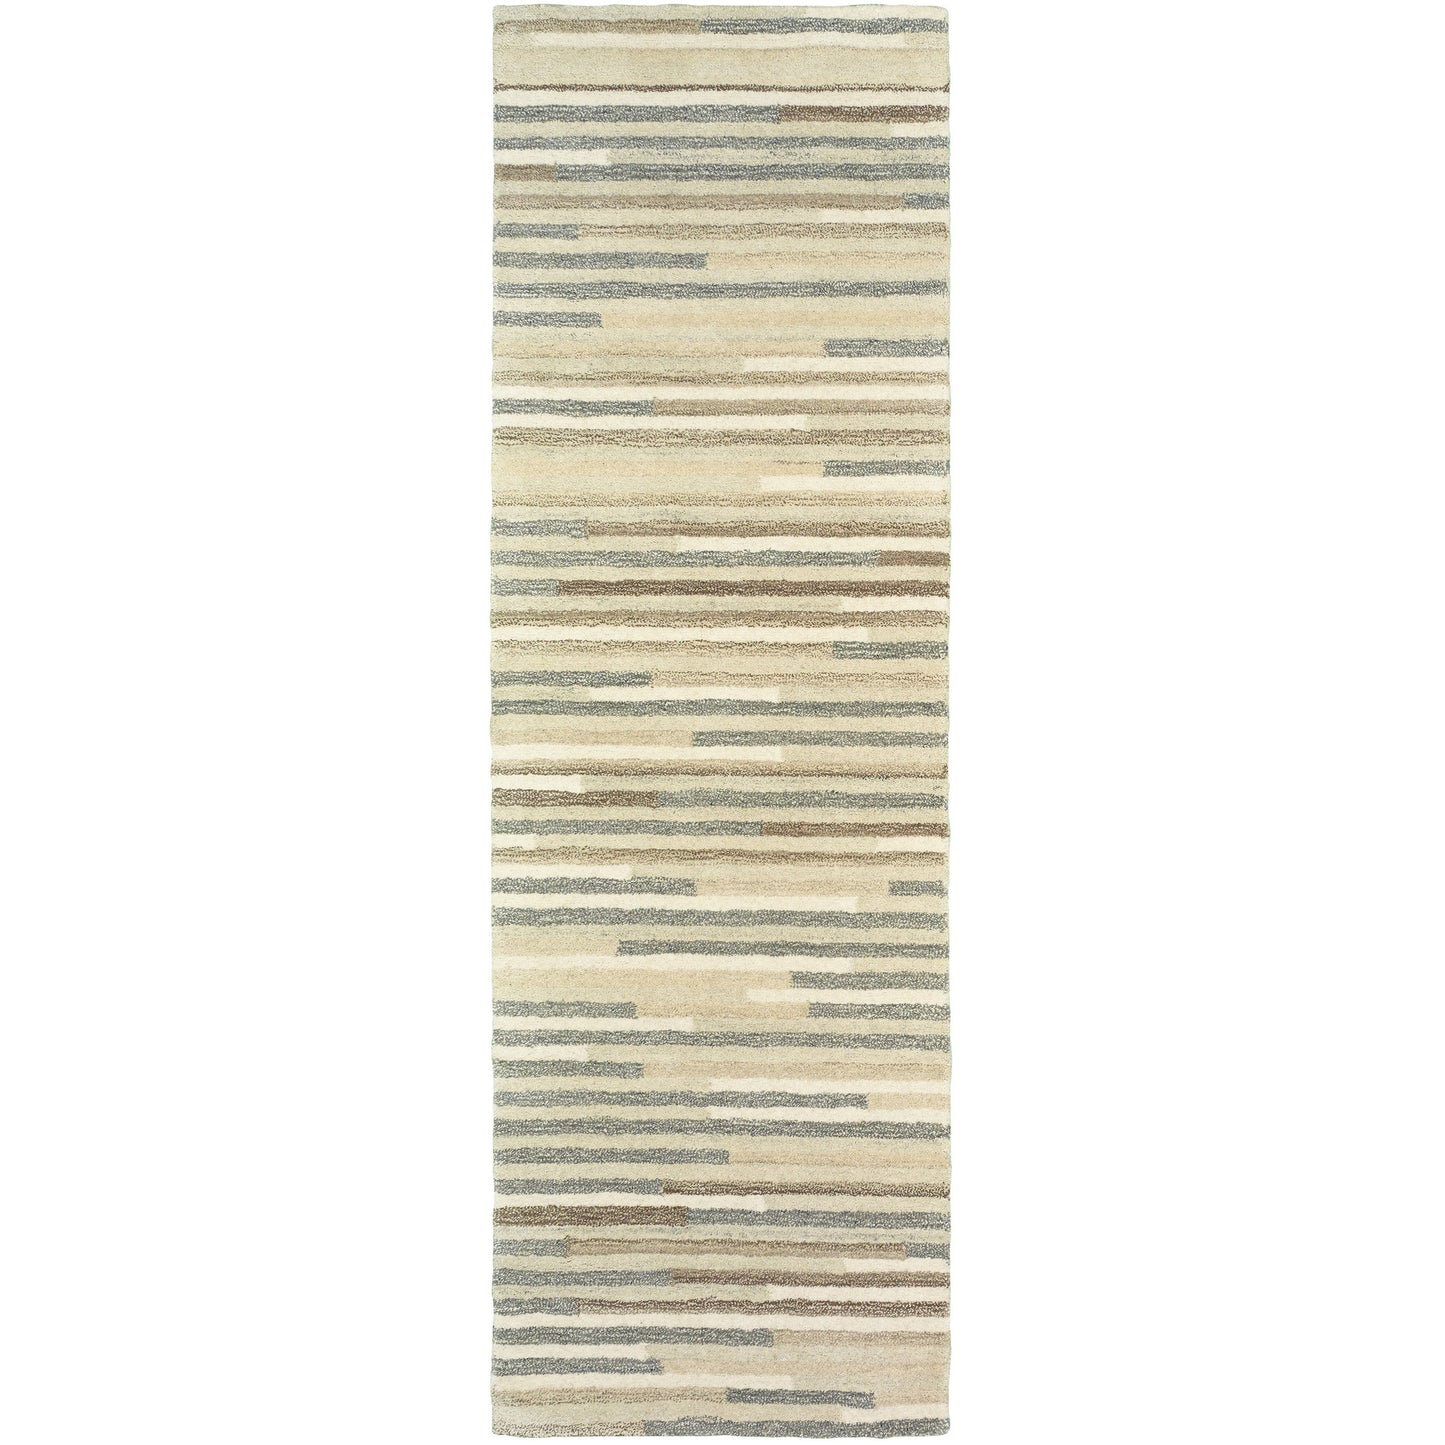 INFUSED 67007 Beige, Grey Rug - Oriental Weavers